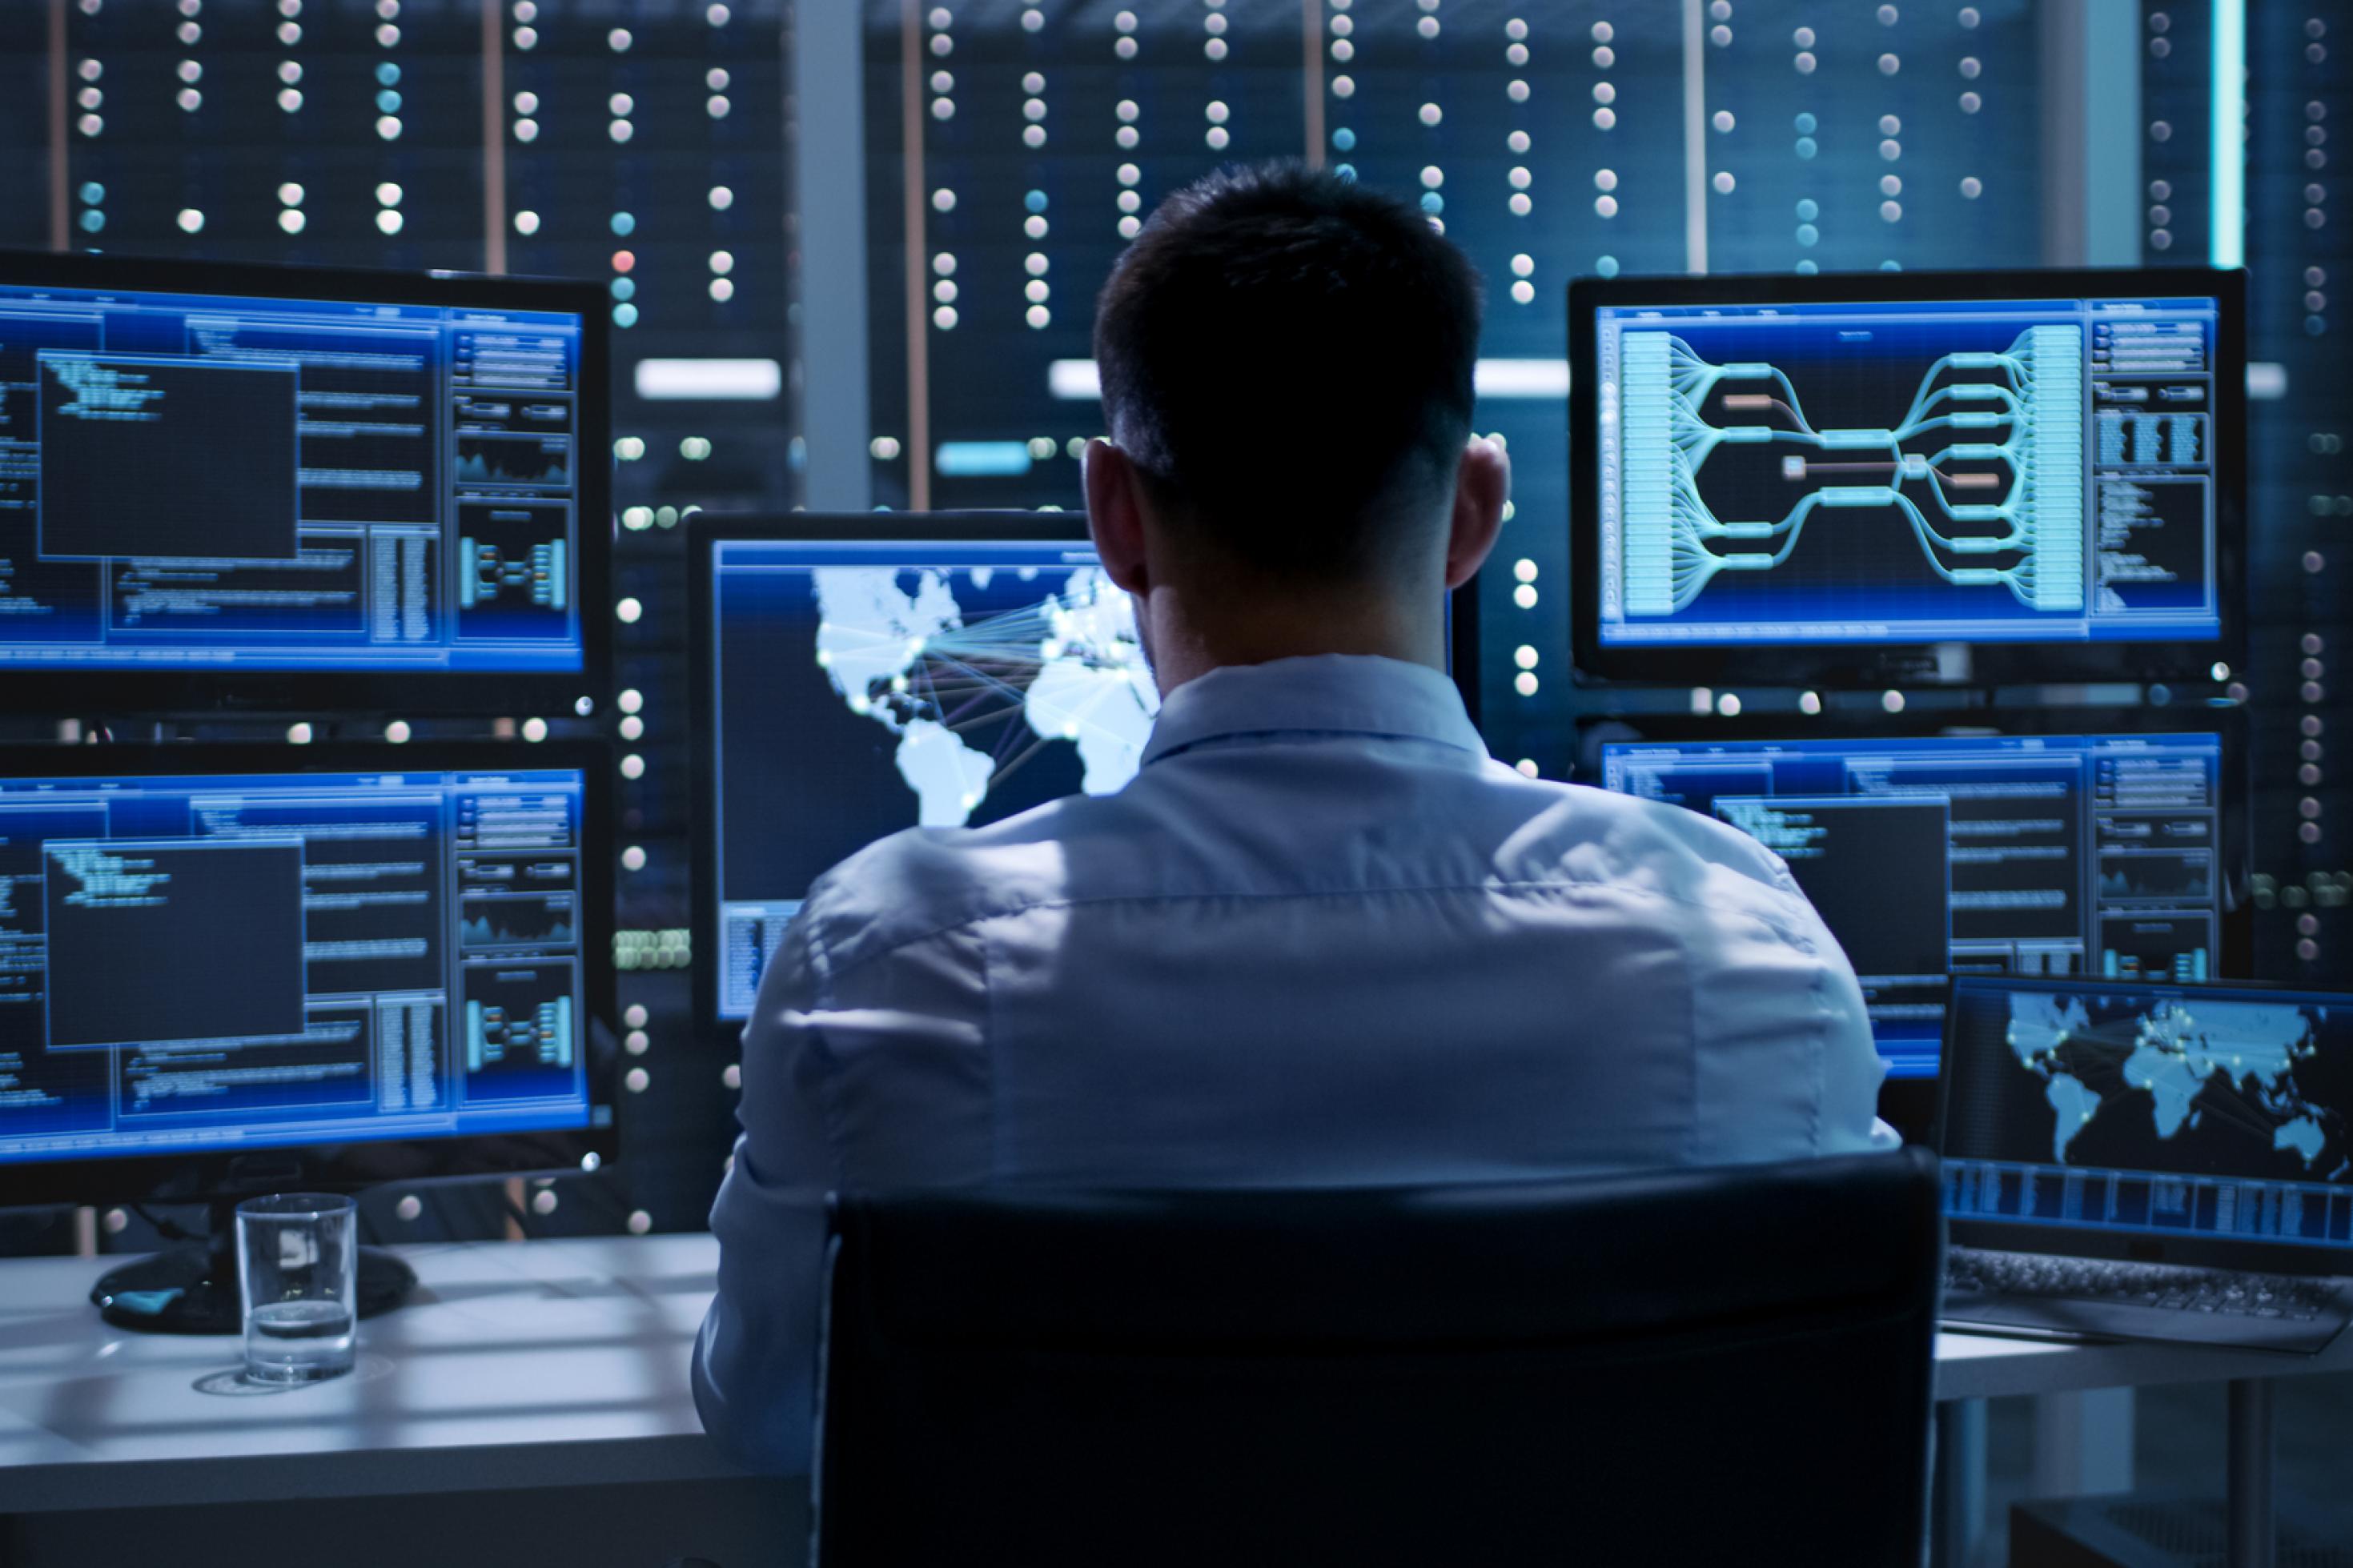 Ein Mann sitzt in einem Büro vor vielen Bildschirmen, die blau leuchten